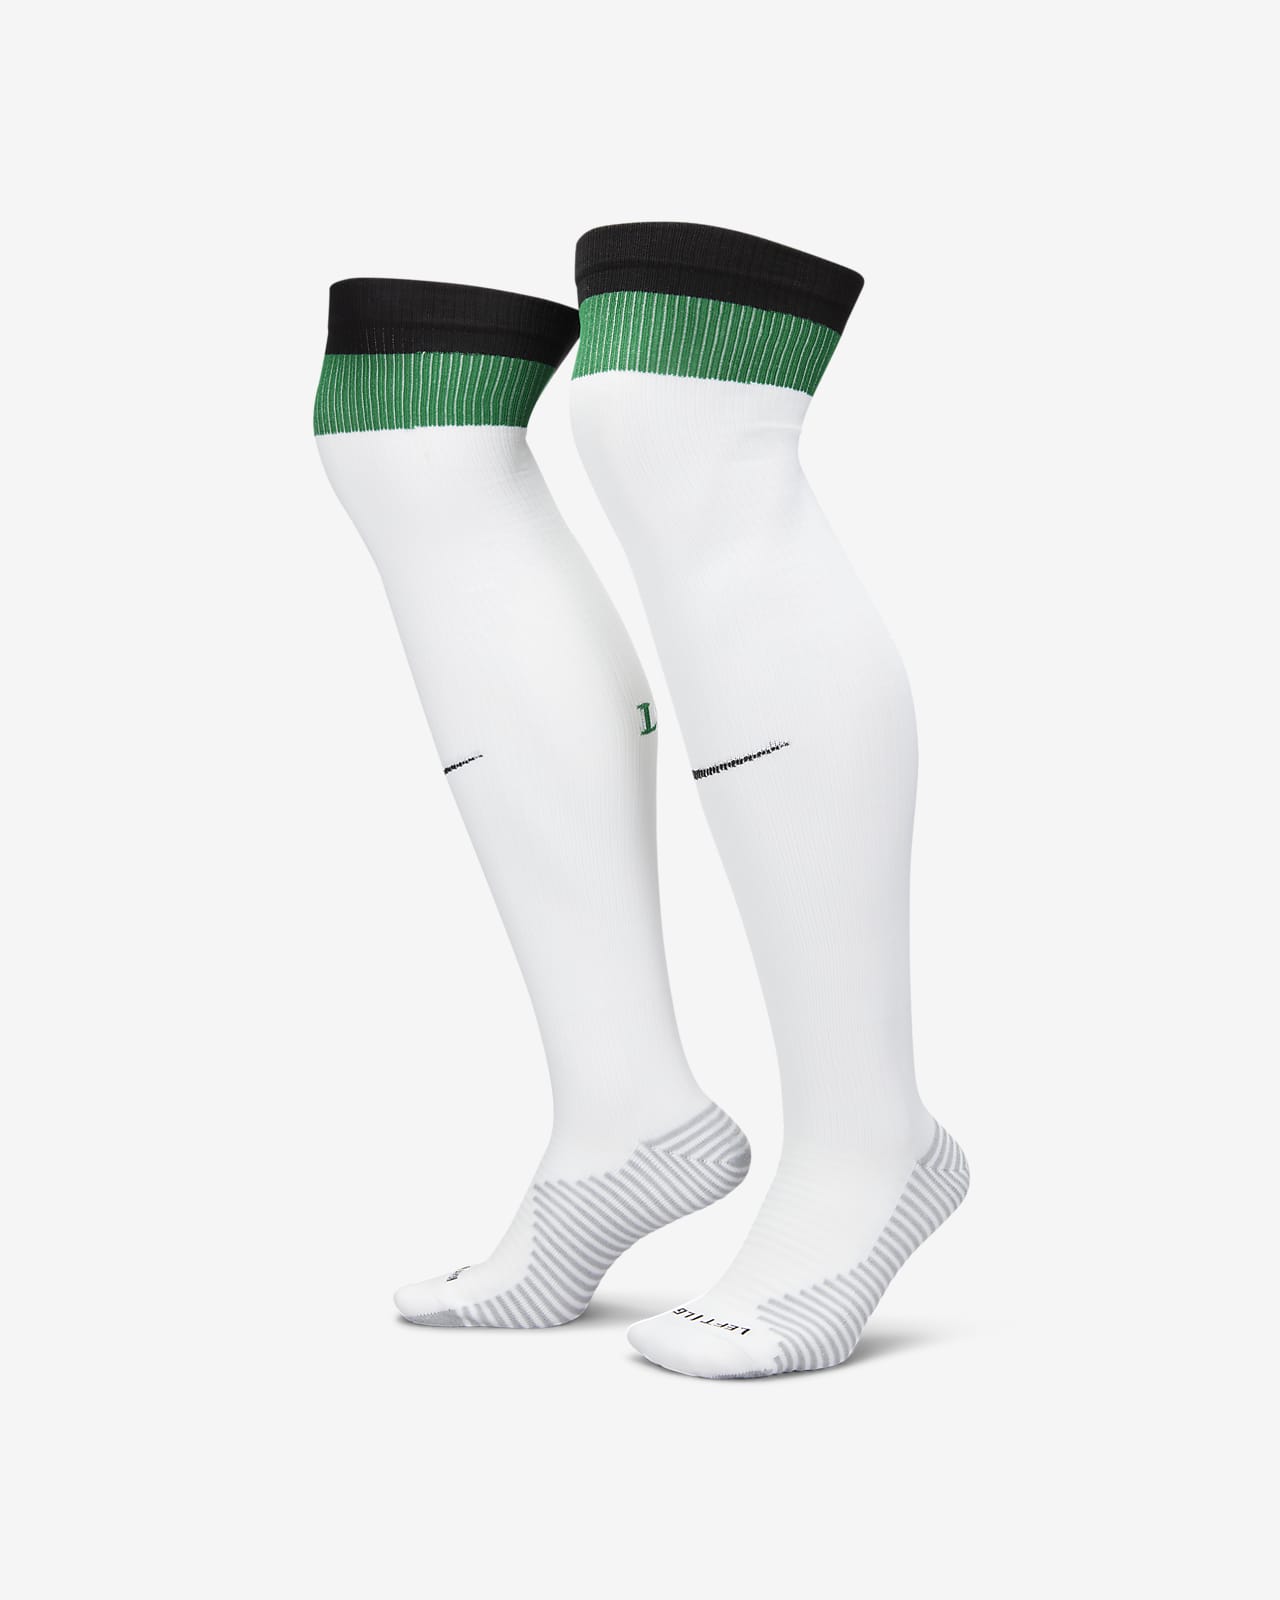 Ποδοσφαιρικές κάλτσες μέχρι το γόνατο εκτός έδρας Λίβερπουλ Strike